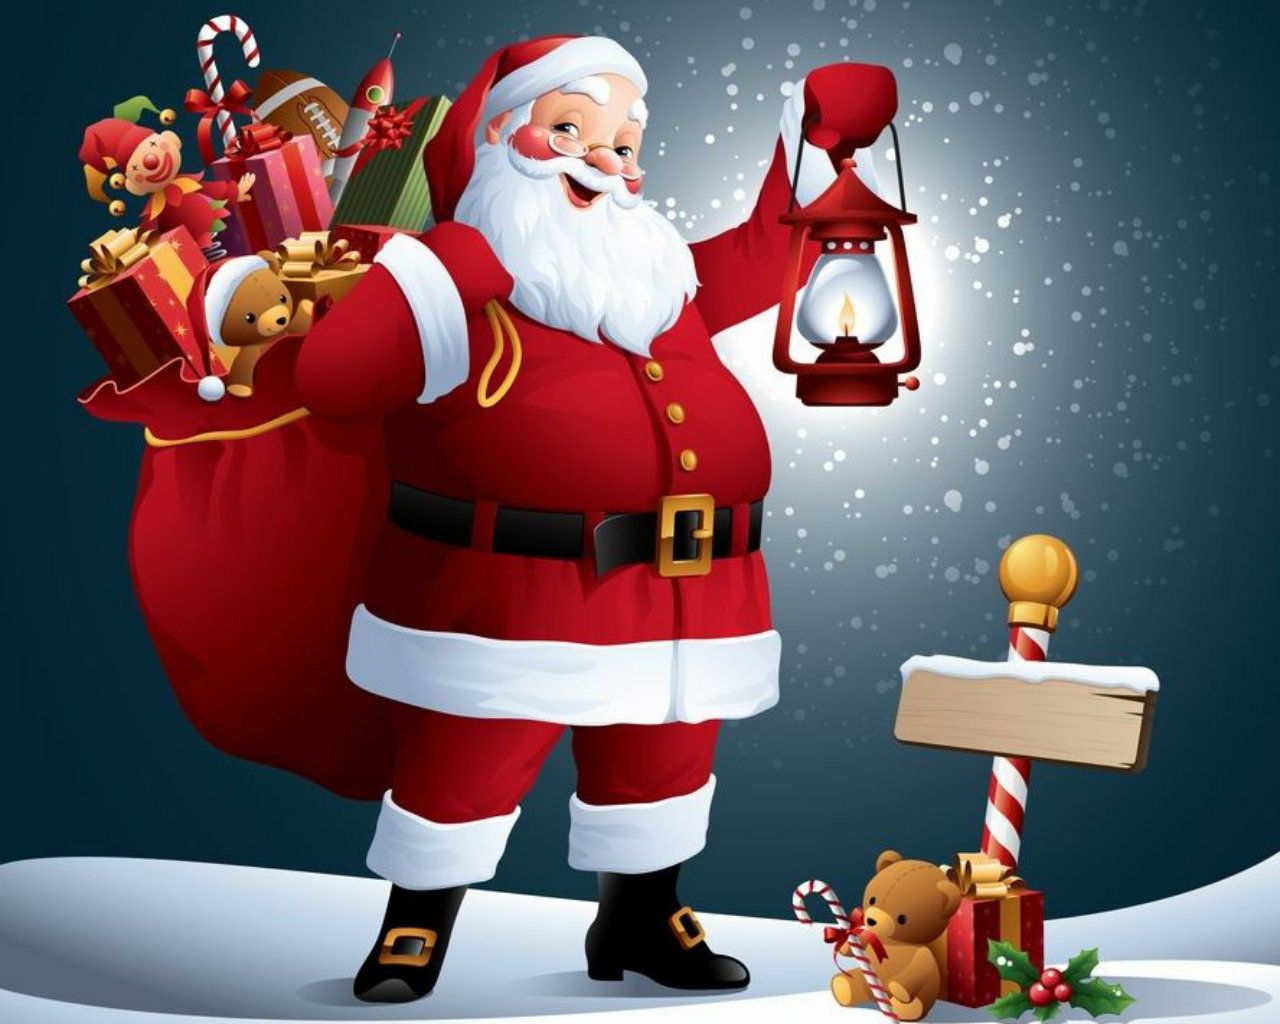 Santa Christmas Images Hd - HD Wallpaper 